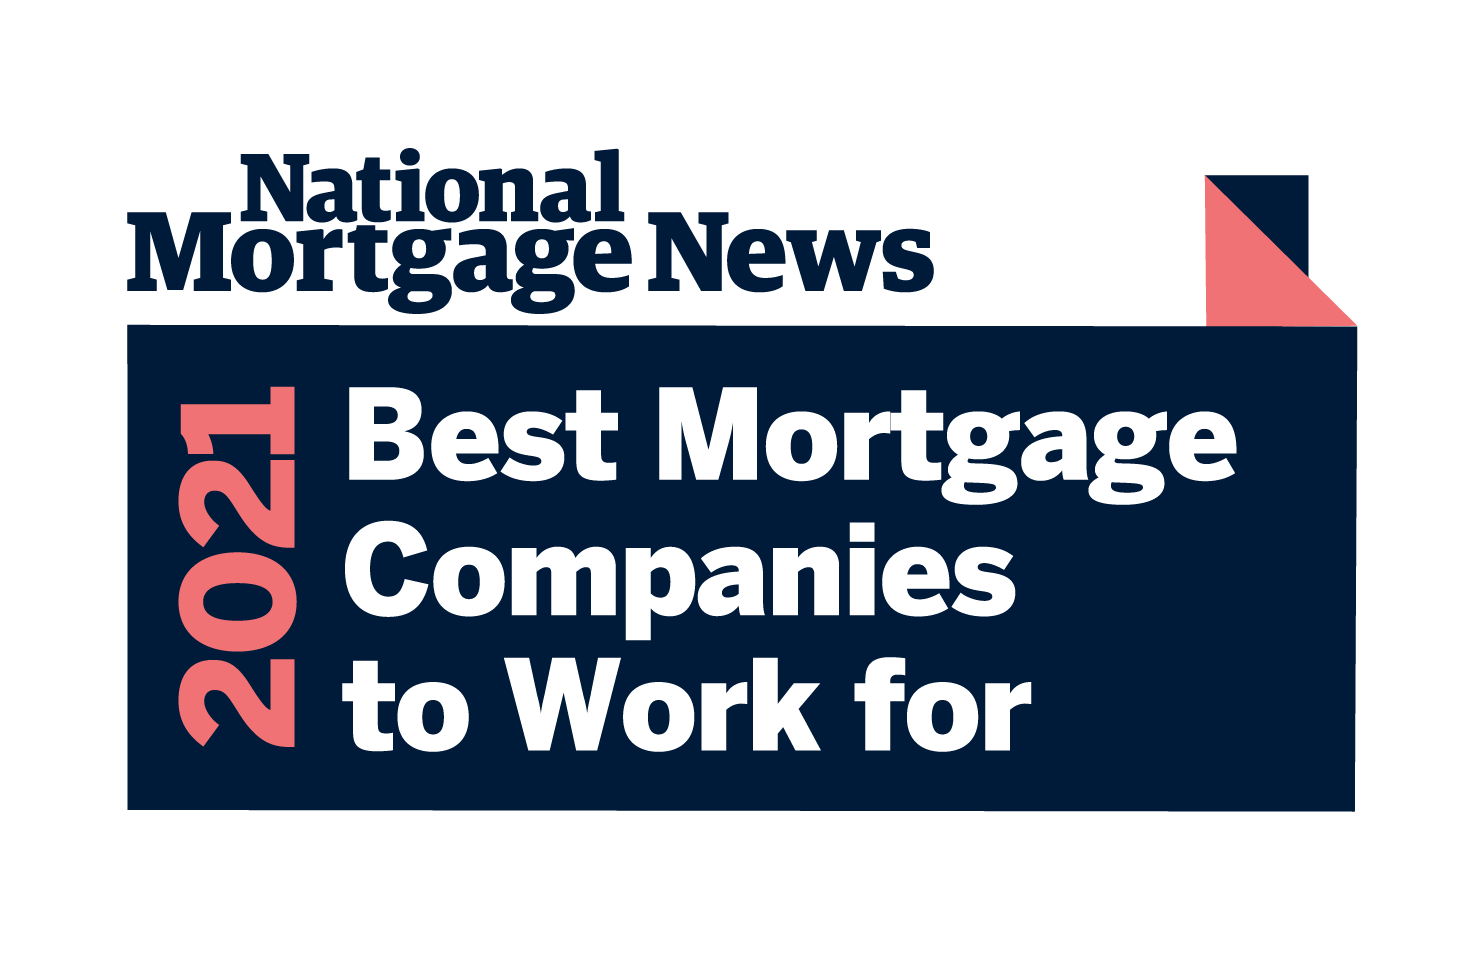 National Mortgage News 2021 